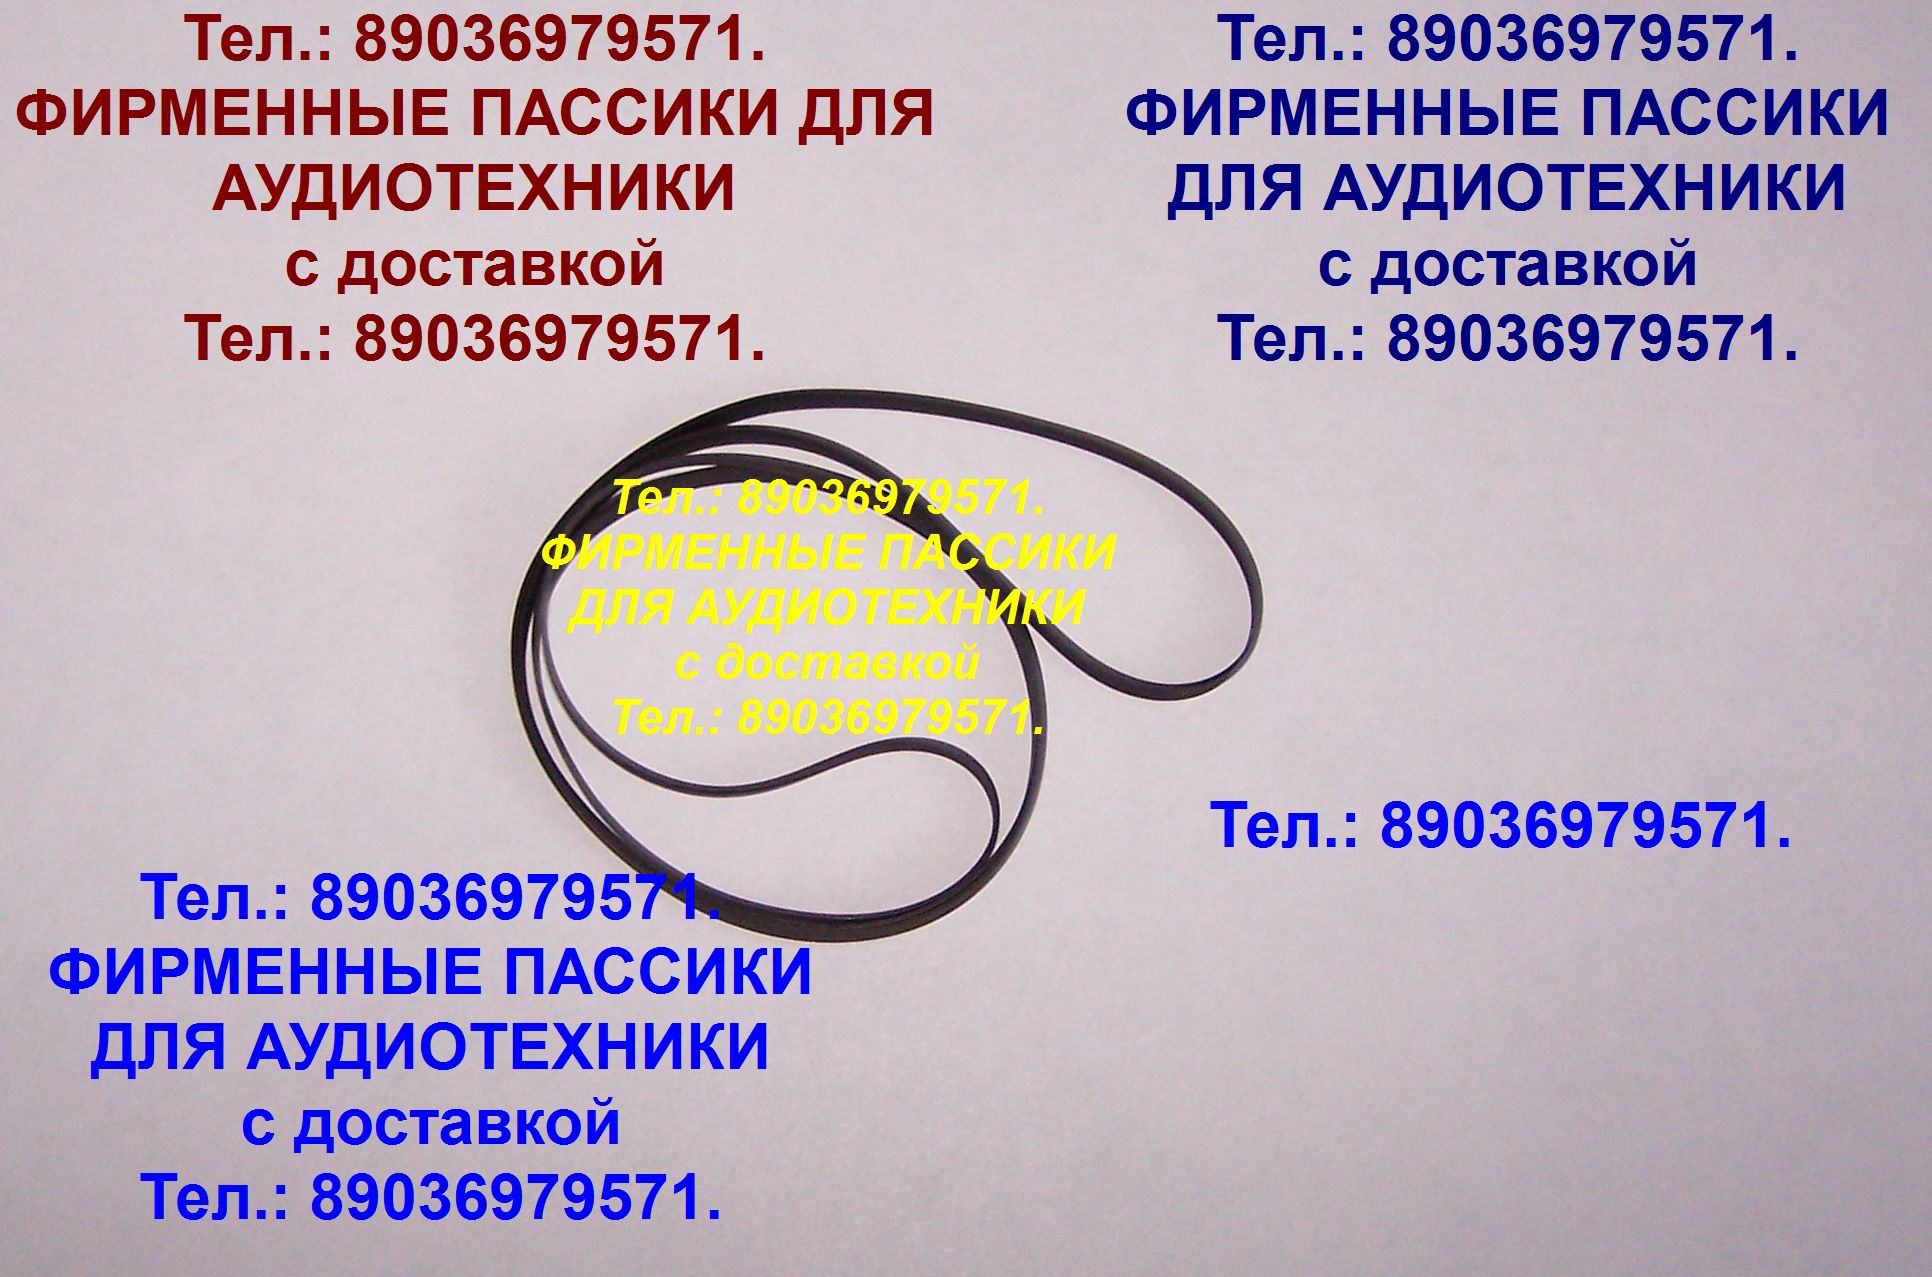 Пассик для National SG-3090 ремень пасик в городе Москва, фото 1, телефон продавца: +7 (903) 697-95-71